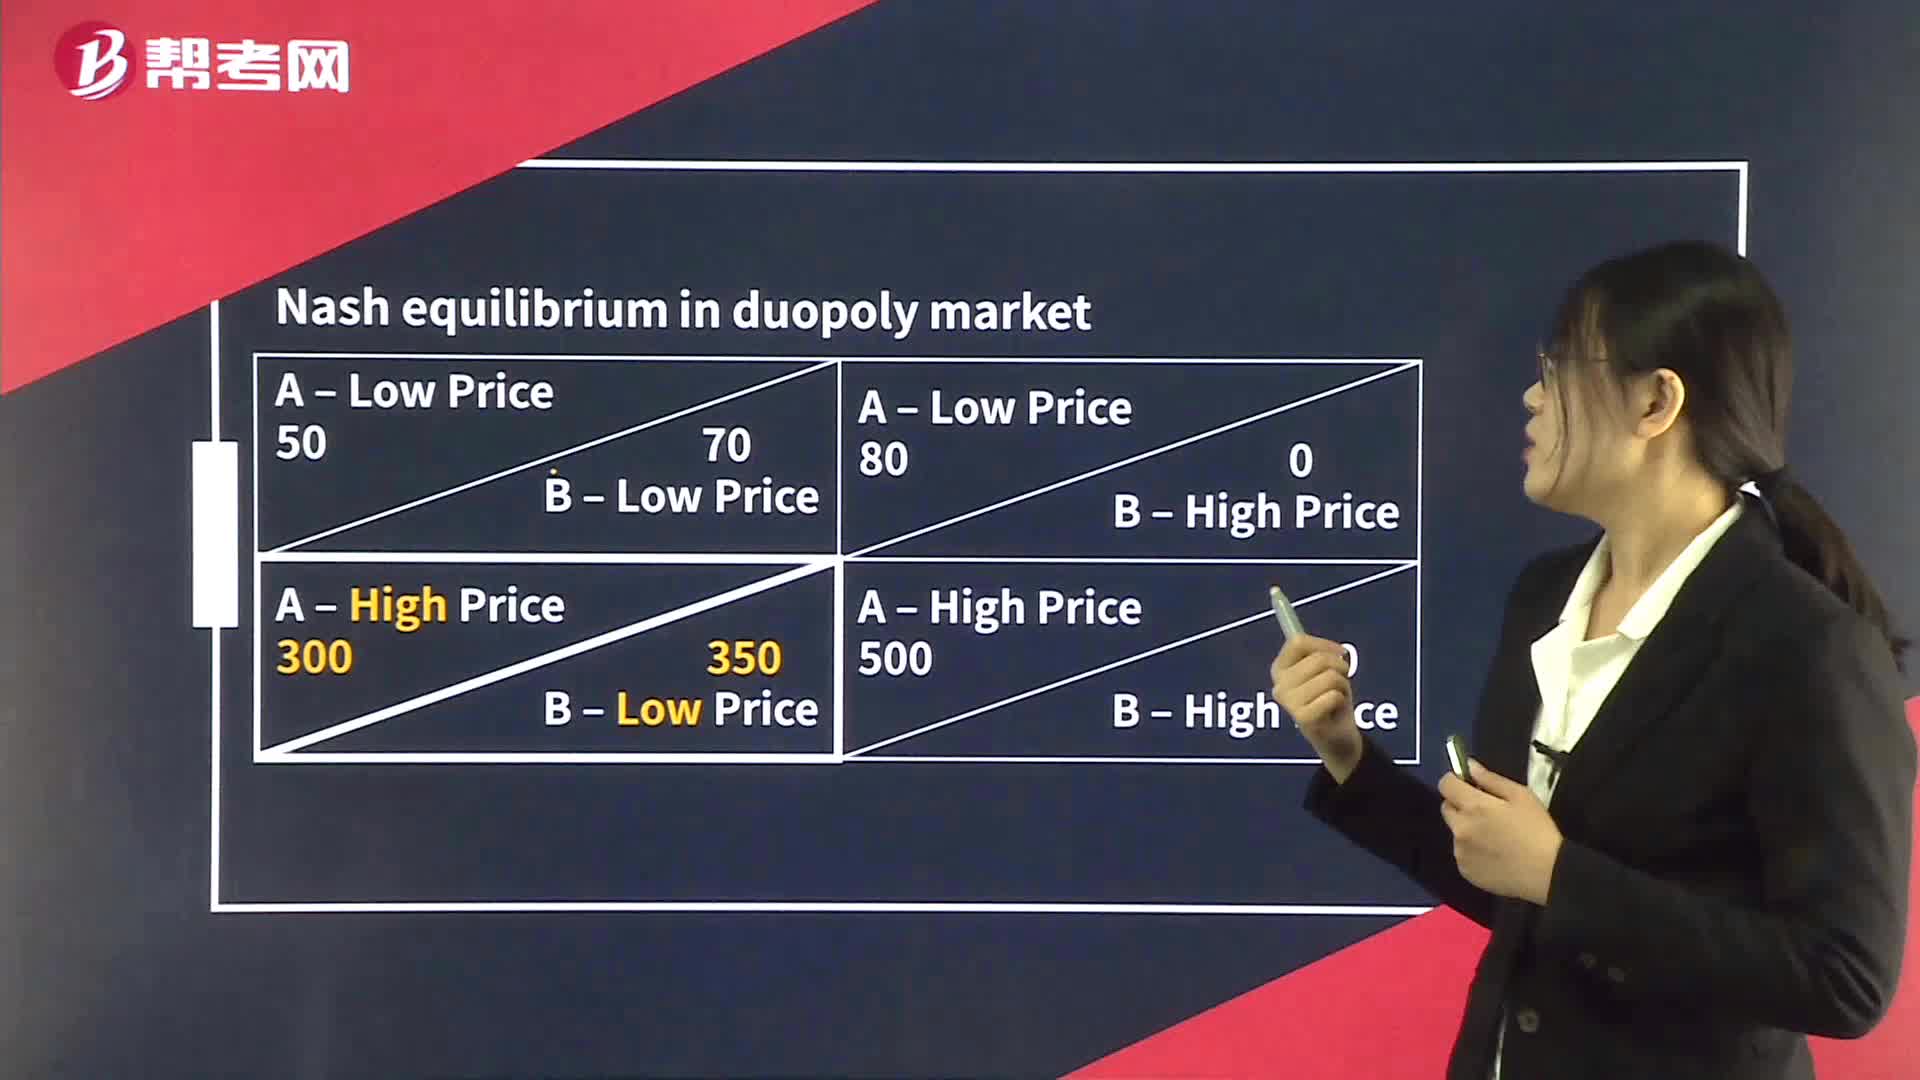 Nash Equilibrium in Oligopoly Market